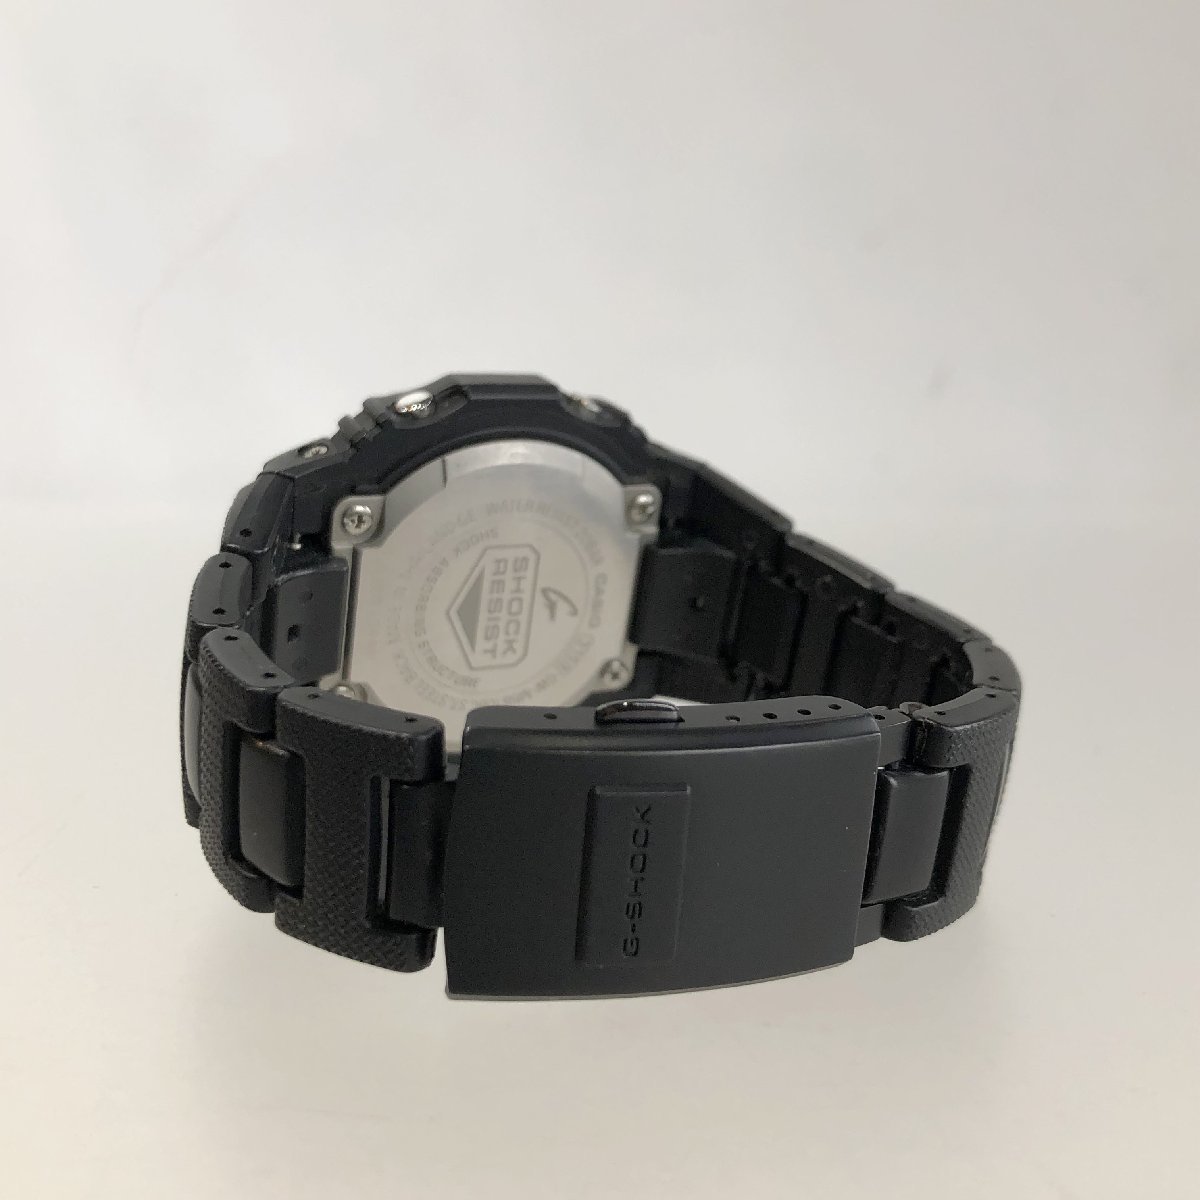 Bibian 比比昂- 美品CASIO カシオG-SHOCK 電波ソーラー腕時計GW